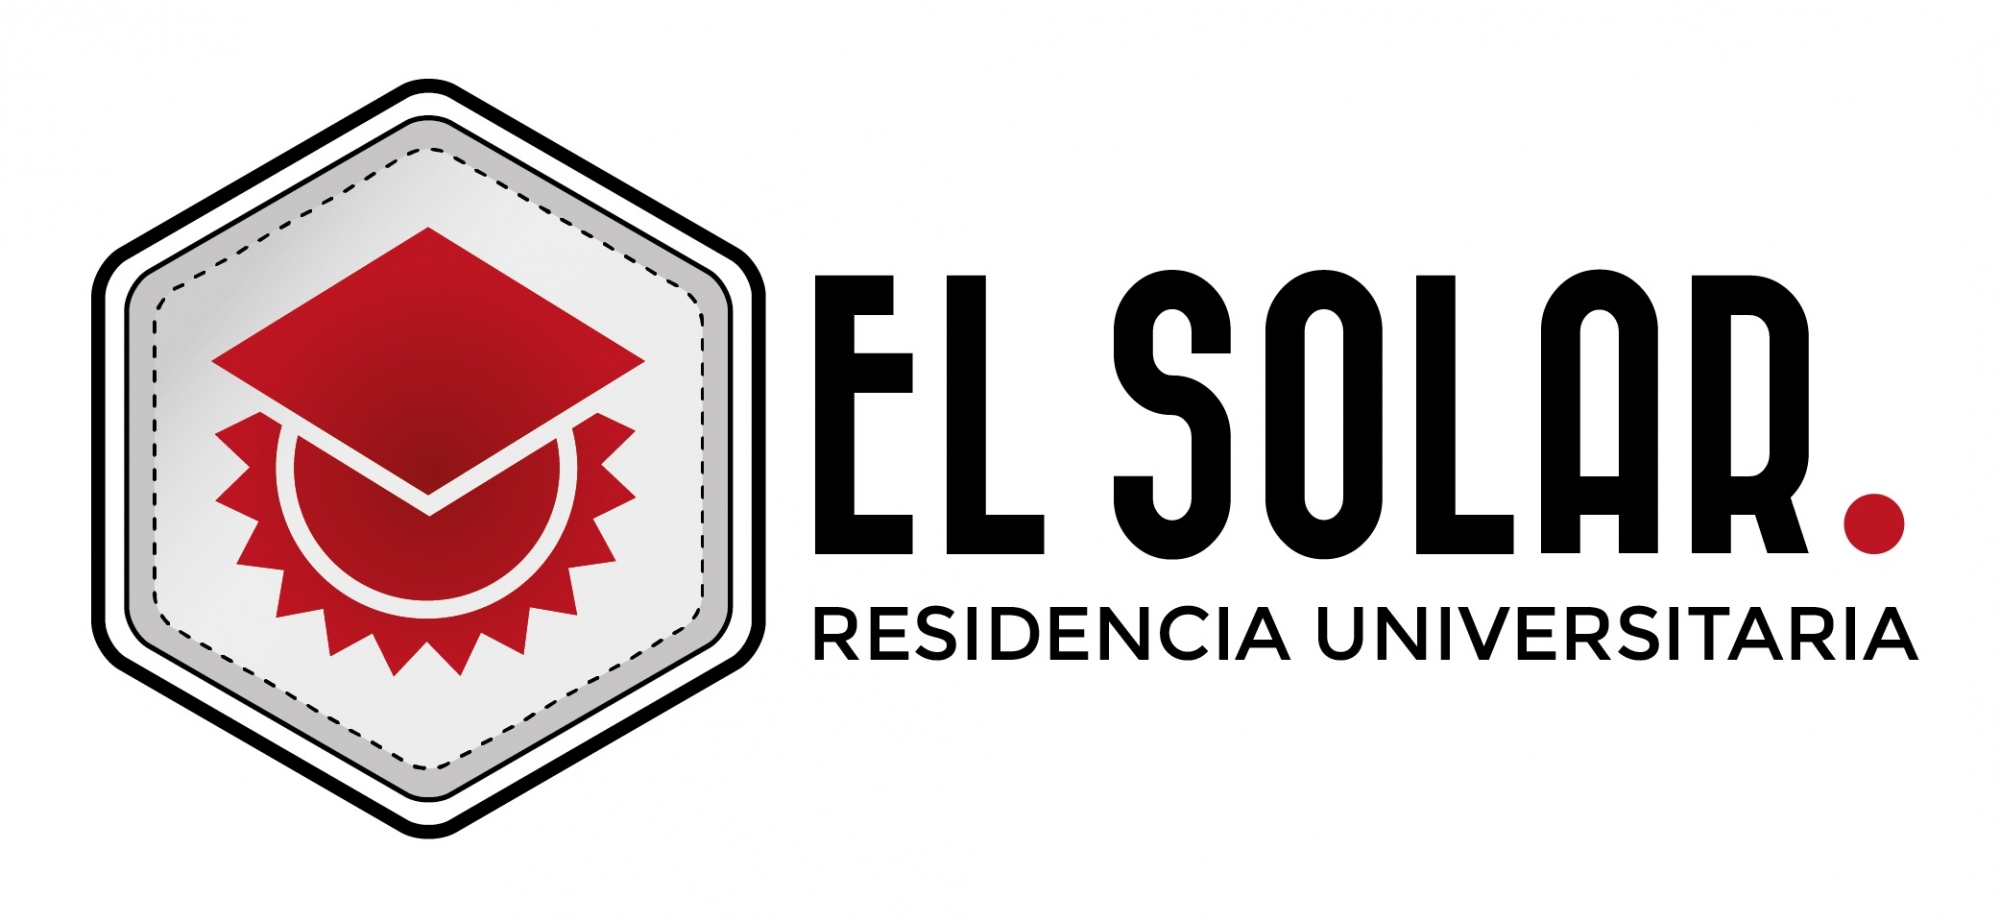 Residencia Universitaria El Solar 